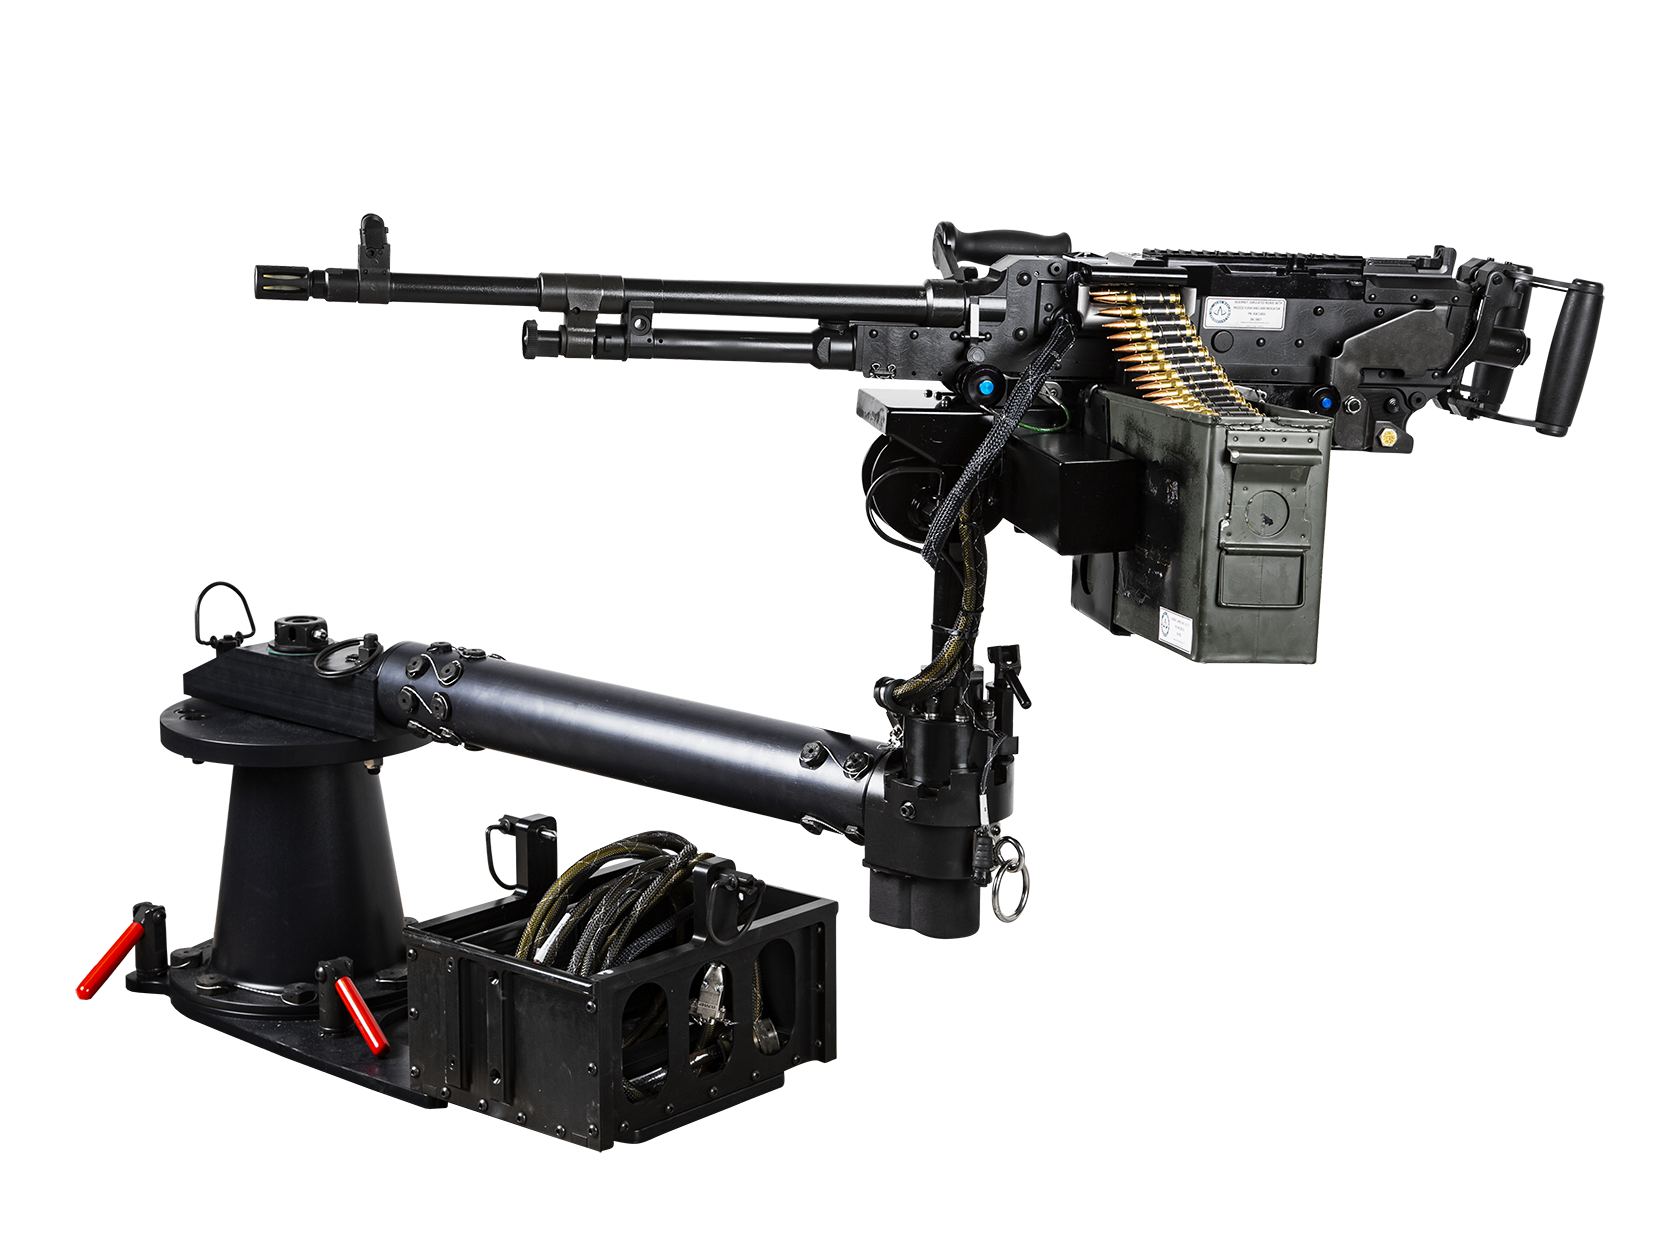 m240 machine guns for sale